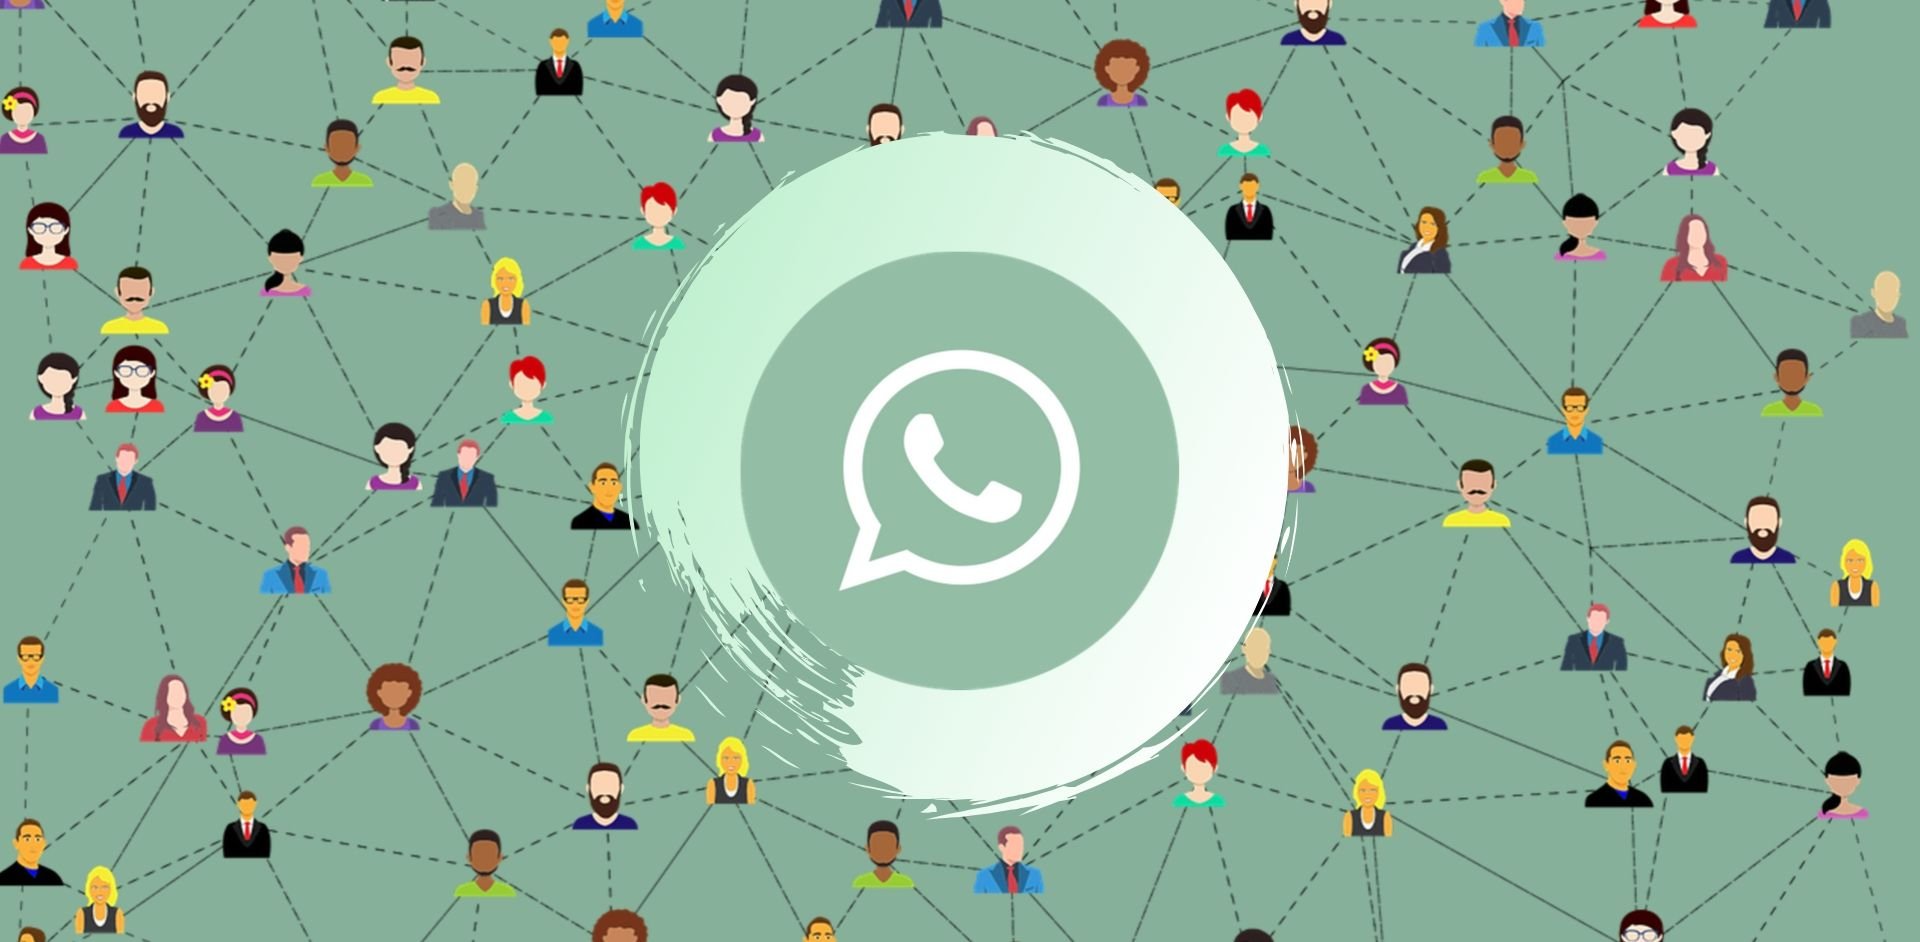 Els administradors de grup de WhatsApp podran eliminar missatges dels xats sense deixar rastre